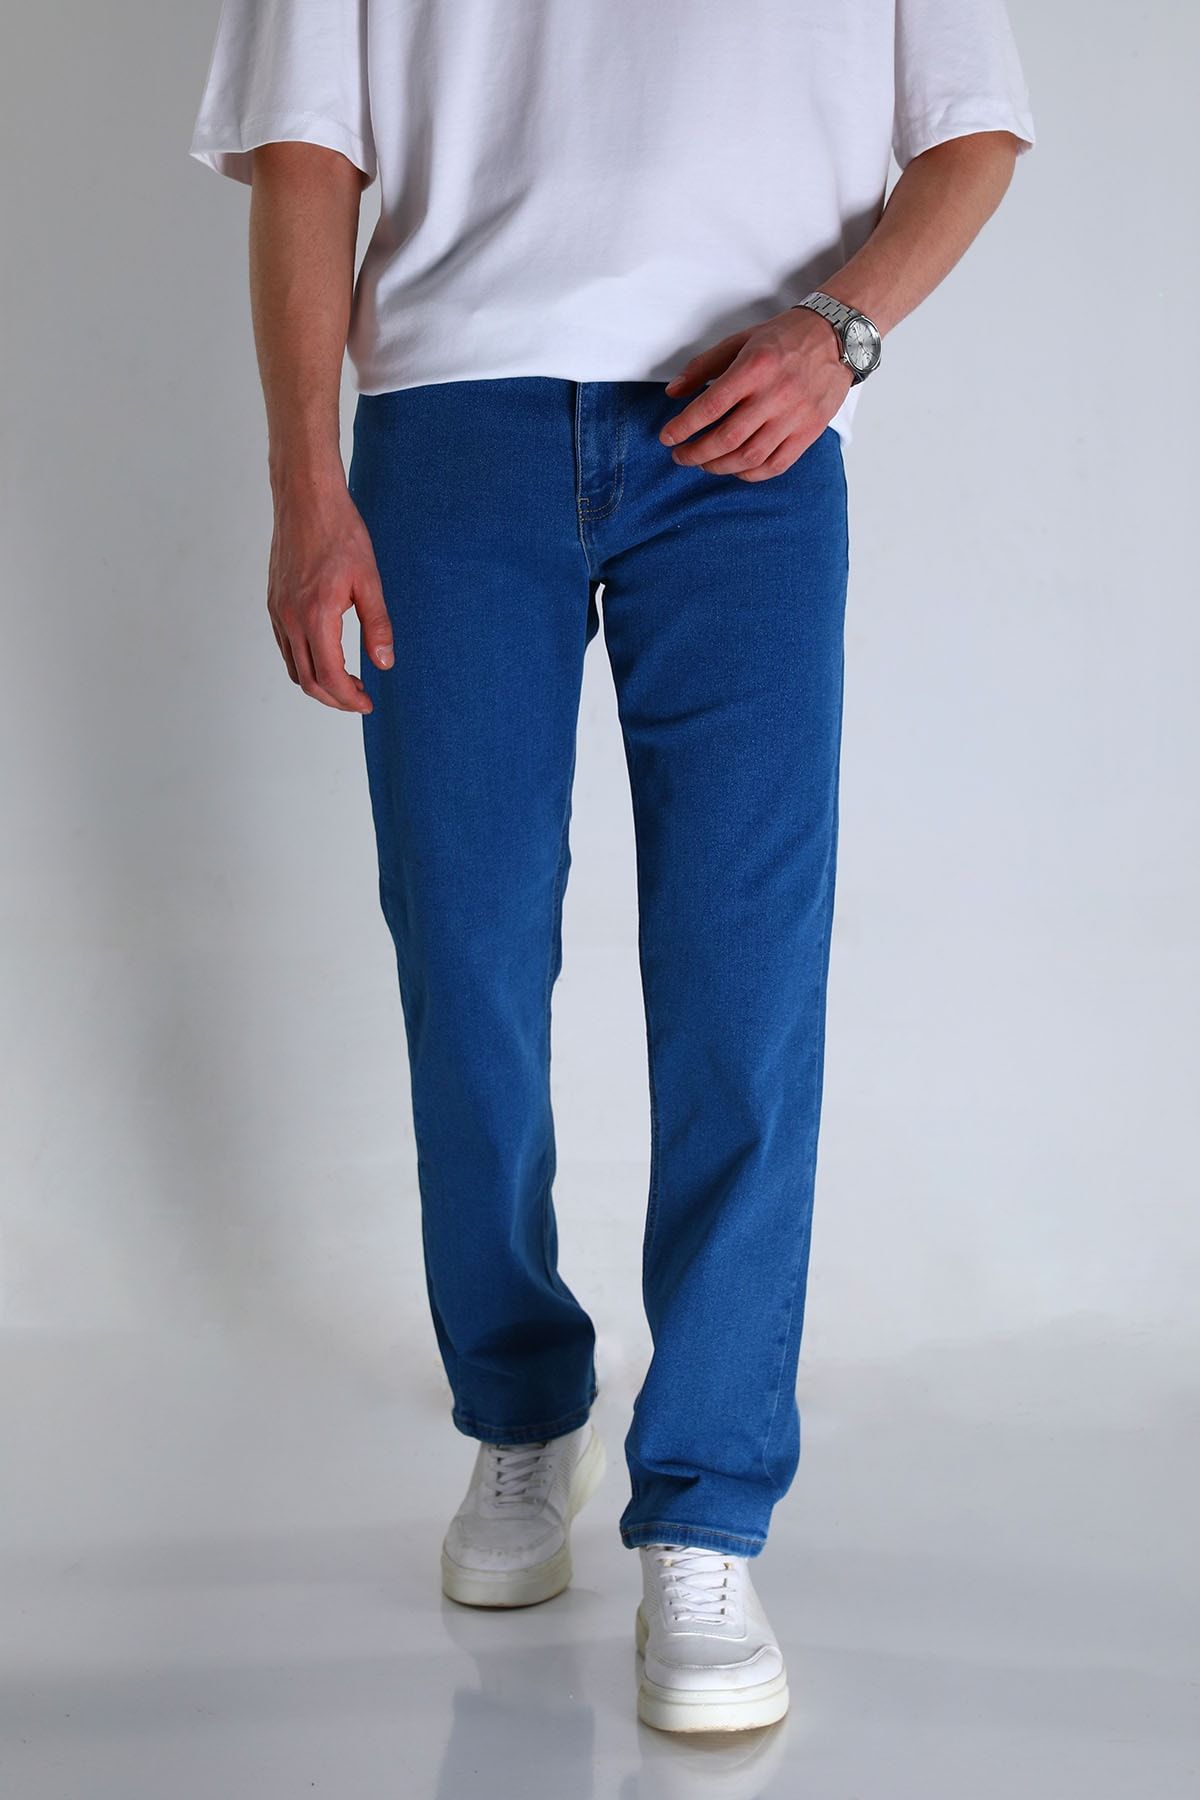 Julude Mavi Erkek Likralı Jeans Pantolon